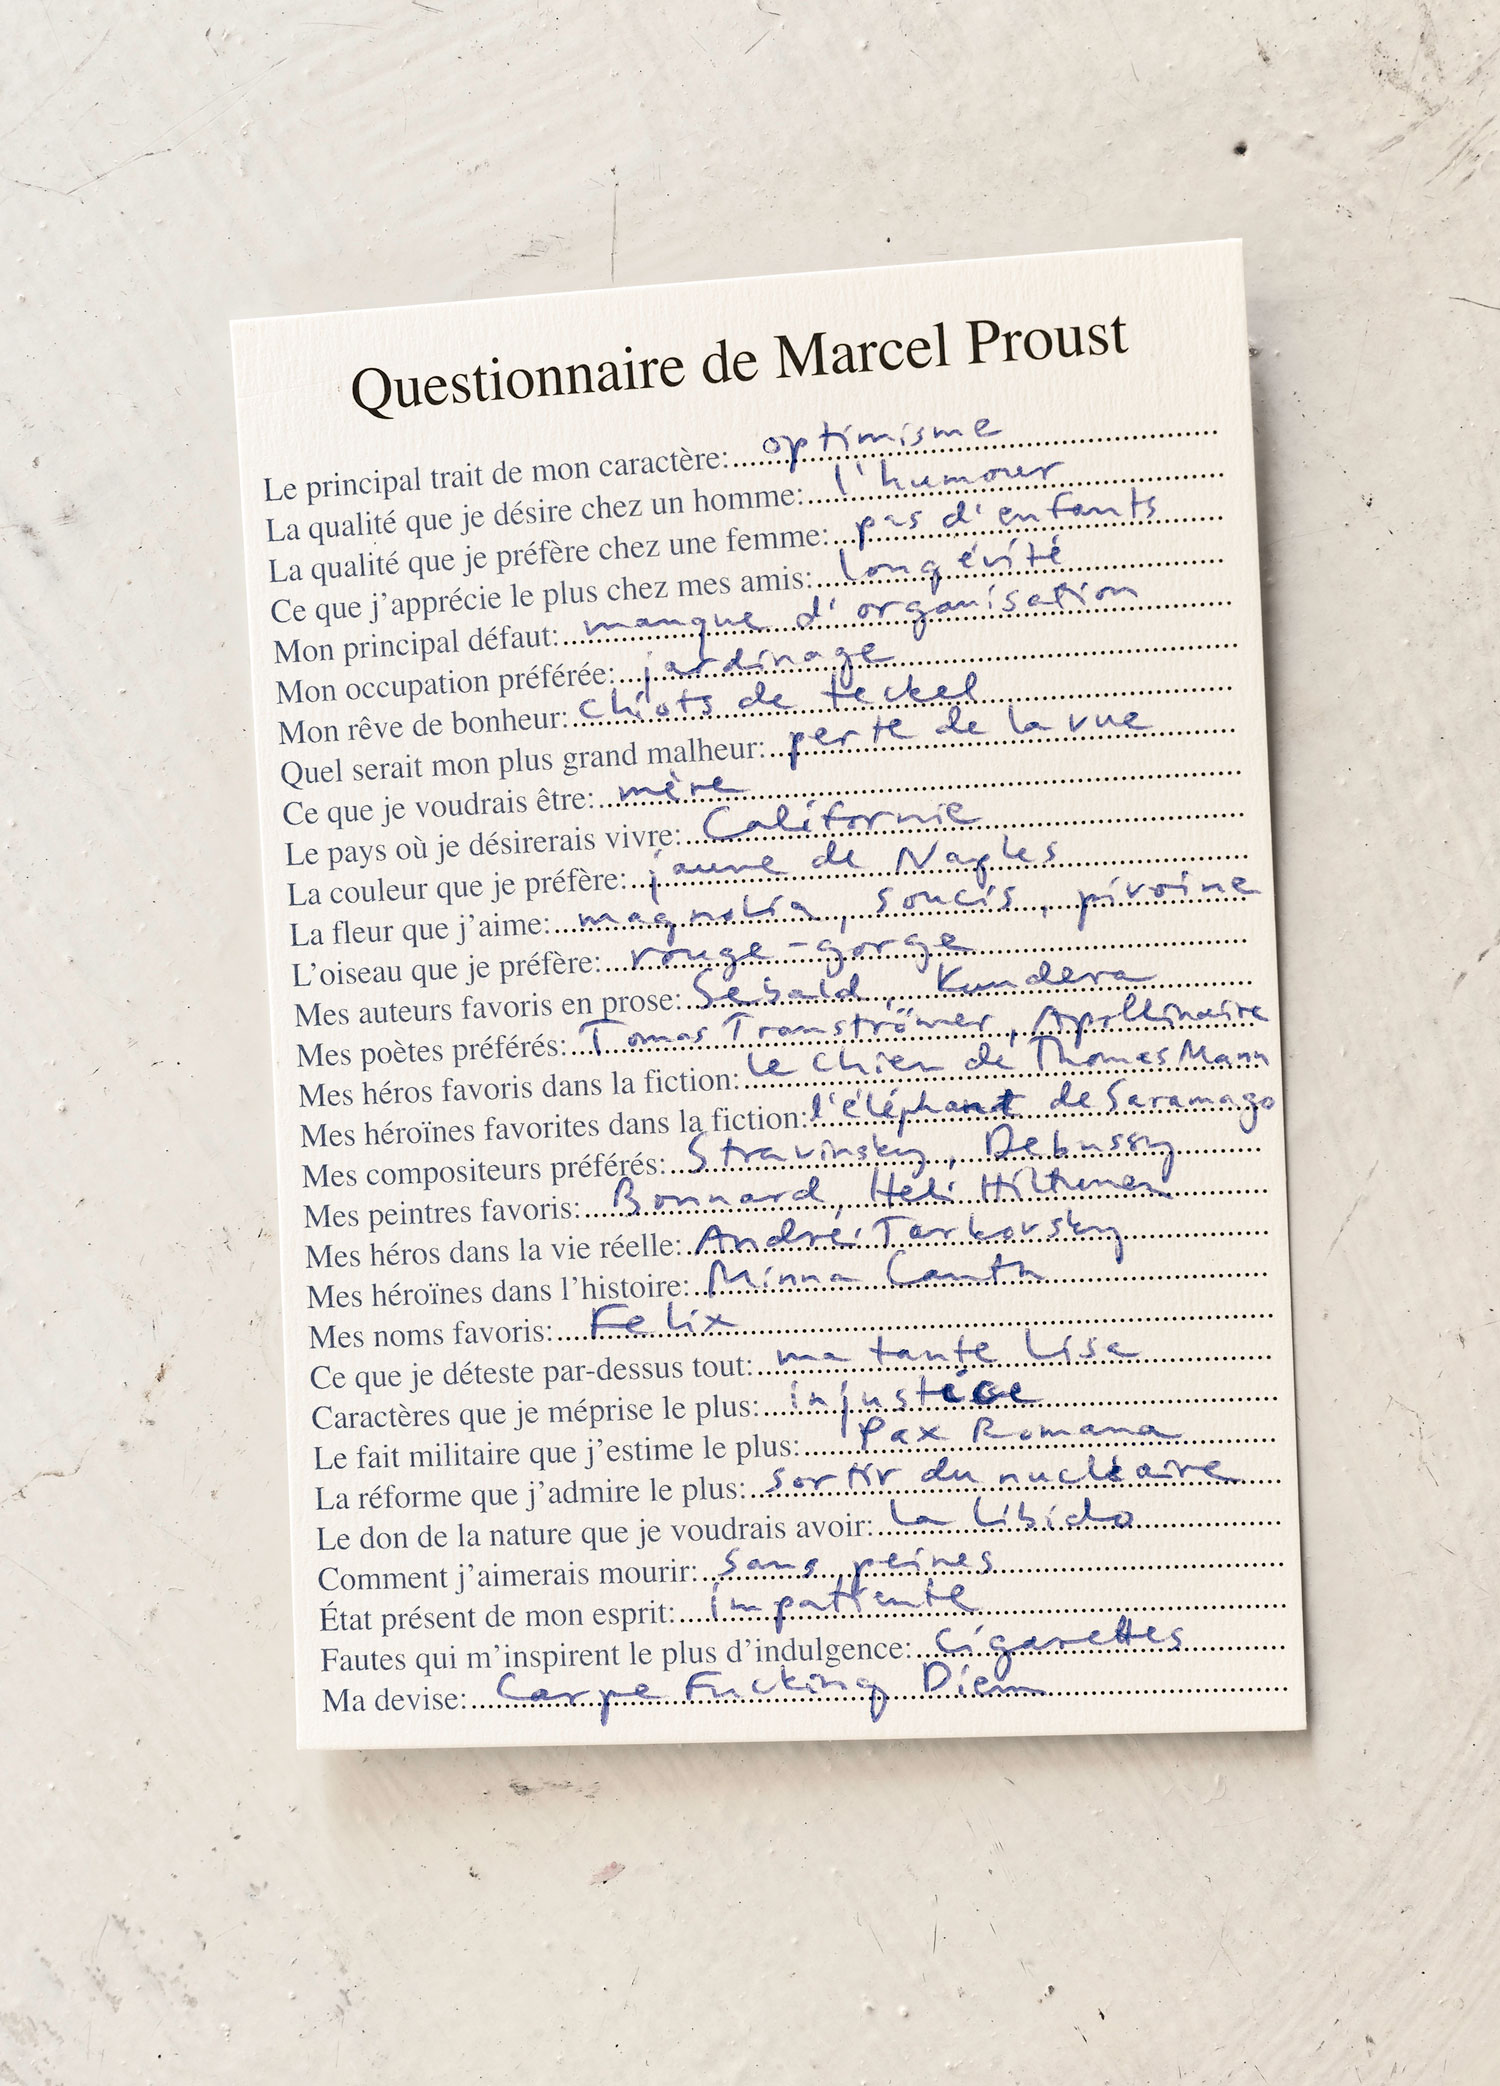 Questionnaire de Marcel Proust, 2016